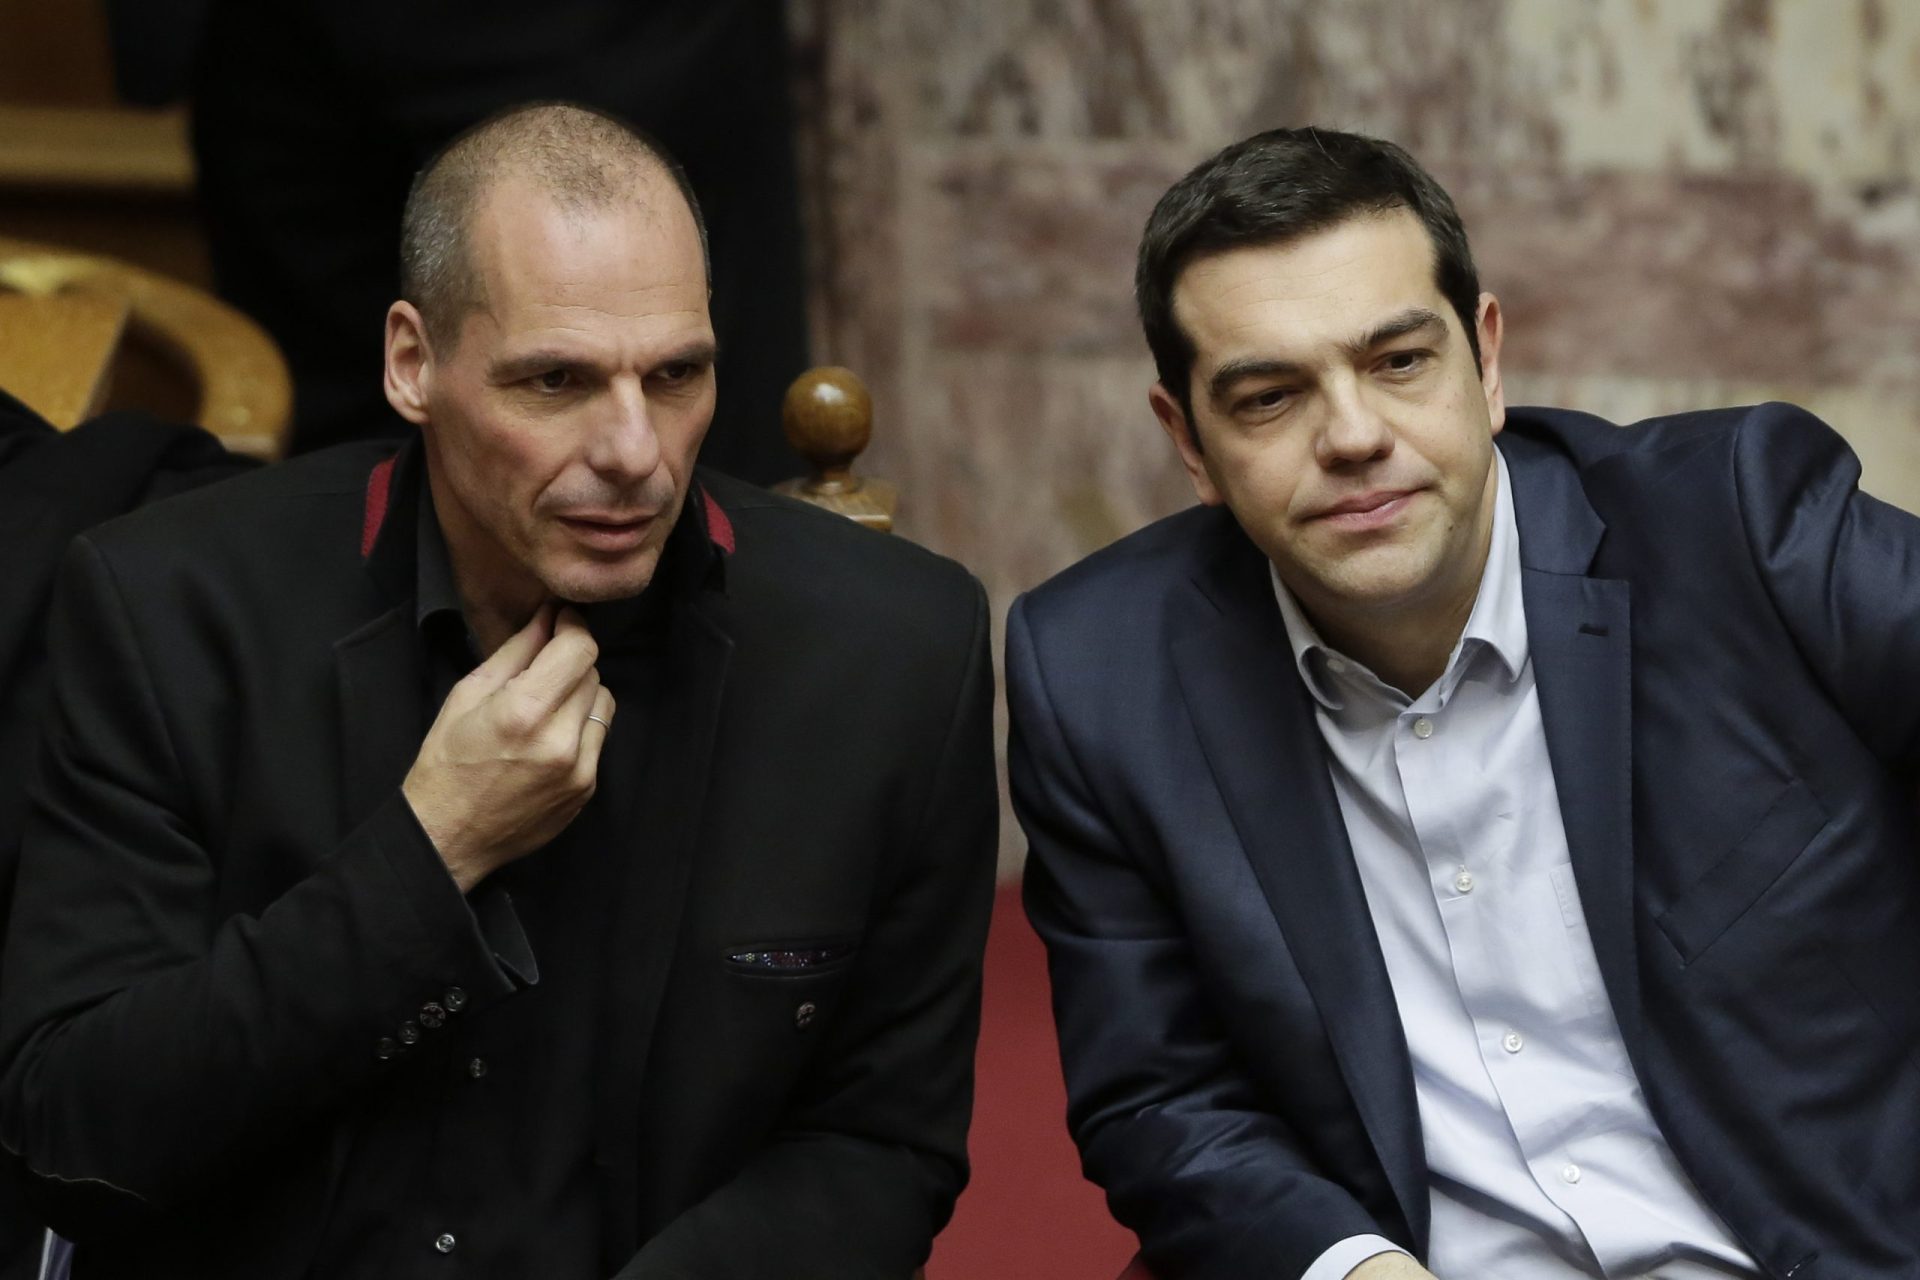 Antes do acordo, Grécia teve gabinete de crise a planear saída do euro